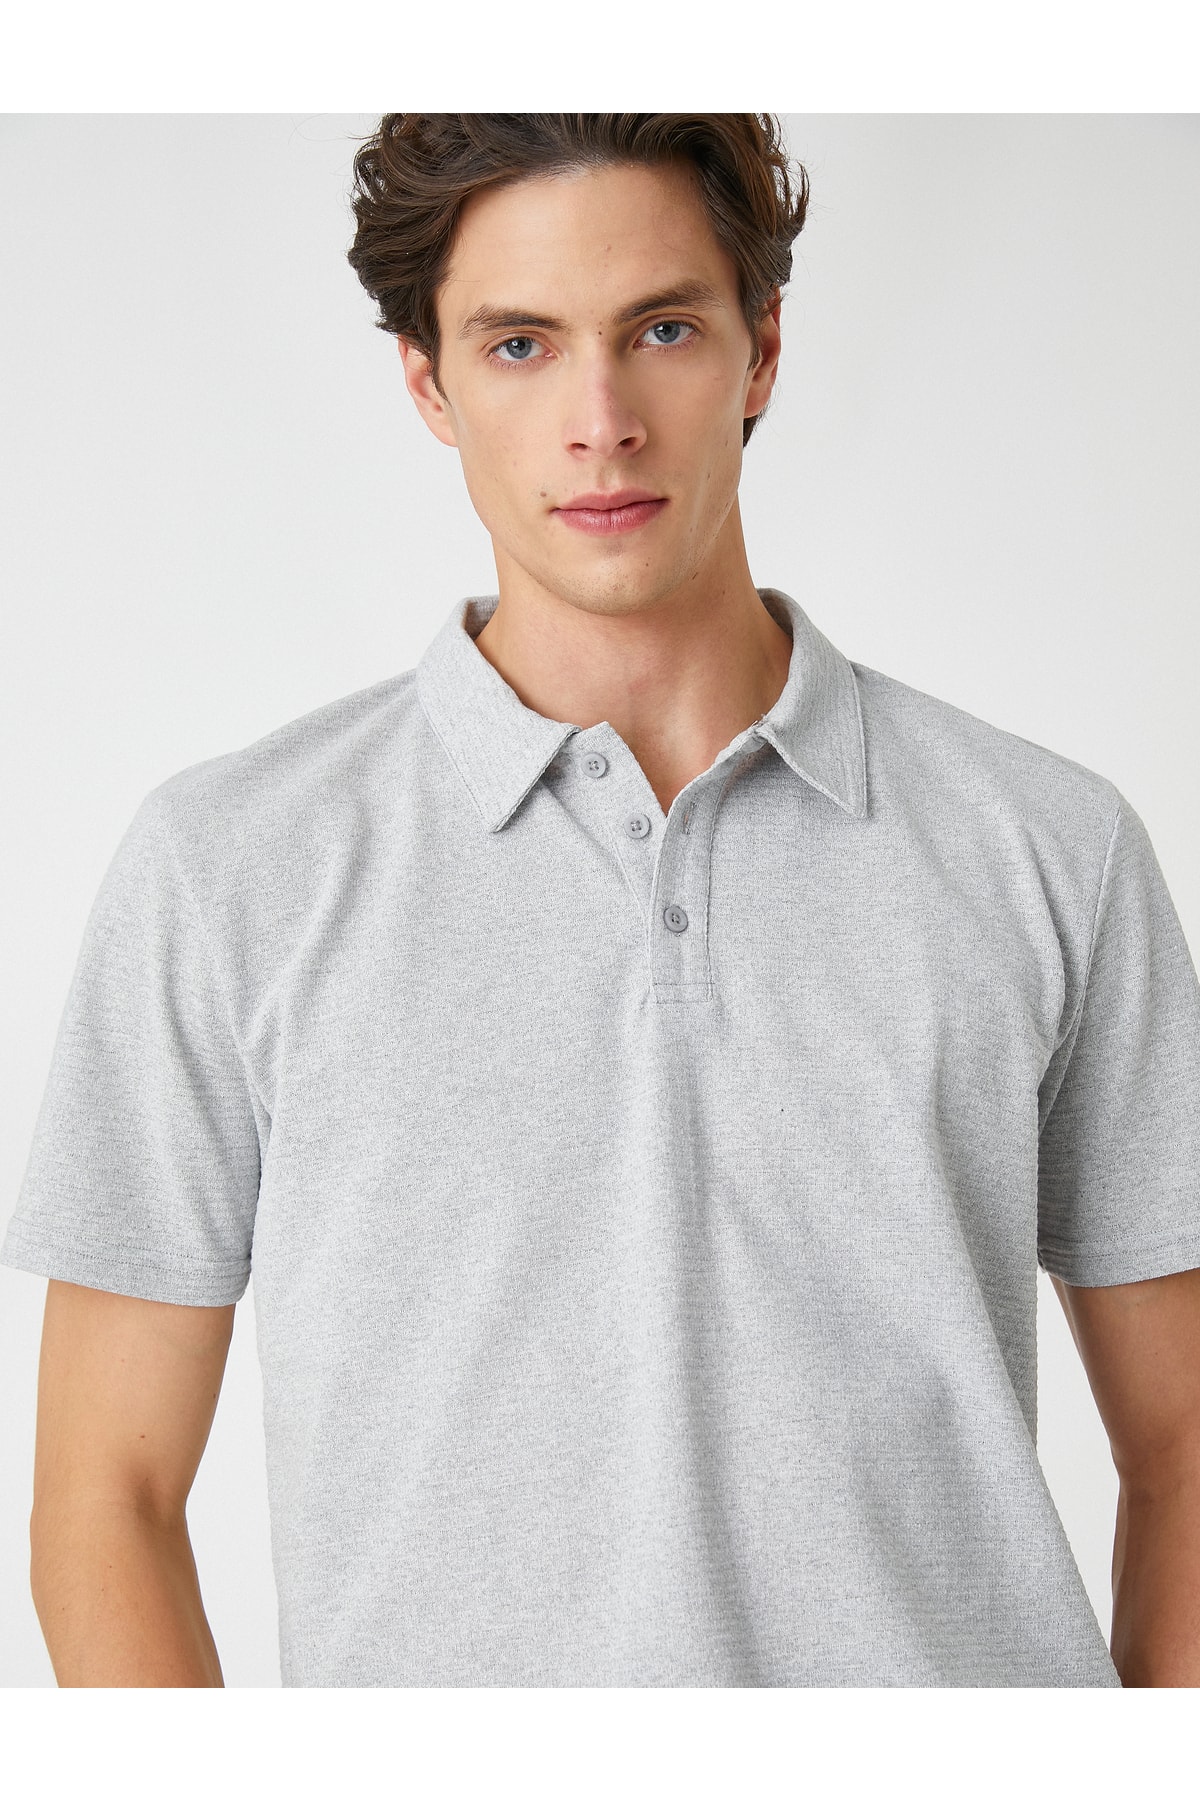 Базовая футболка с воротником-поло на пуговицах с коротким рукавом Koton, серый базовая футболка с воротником поло на пуговицах с коротким рукавом koton хаки